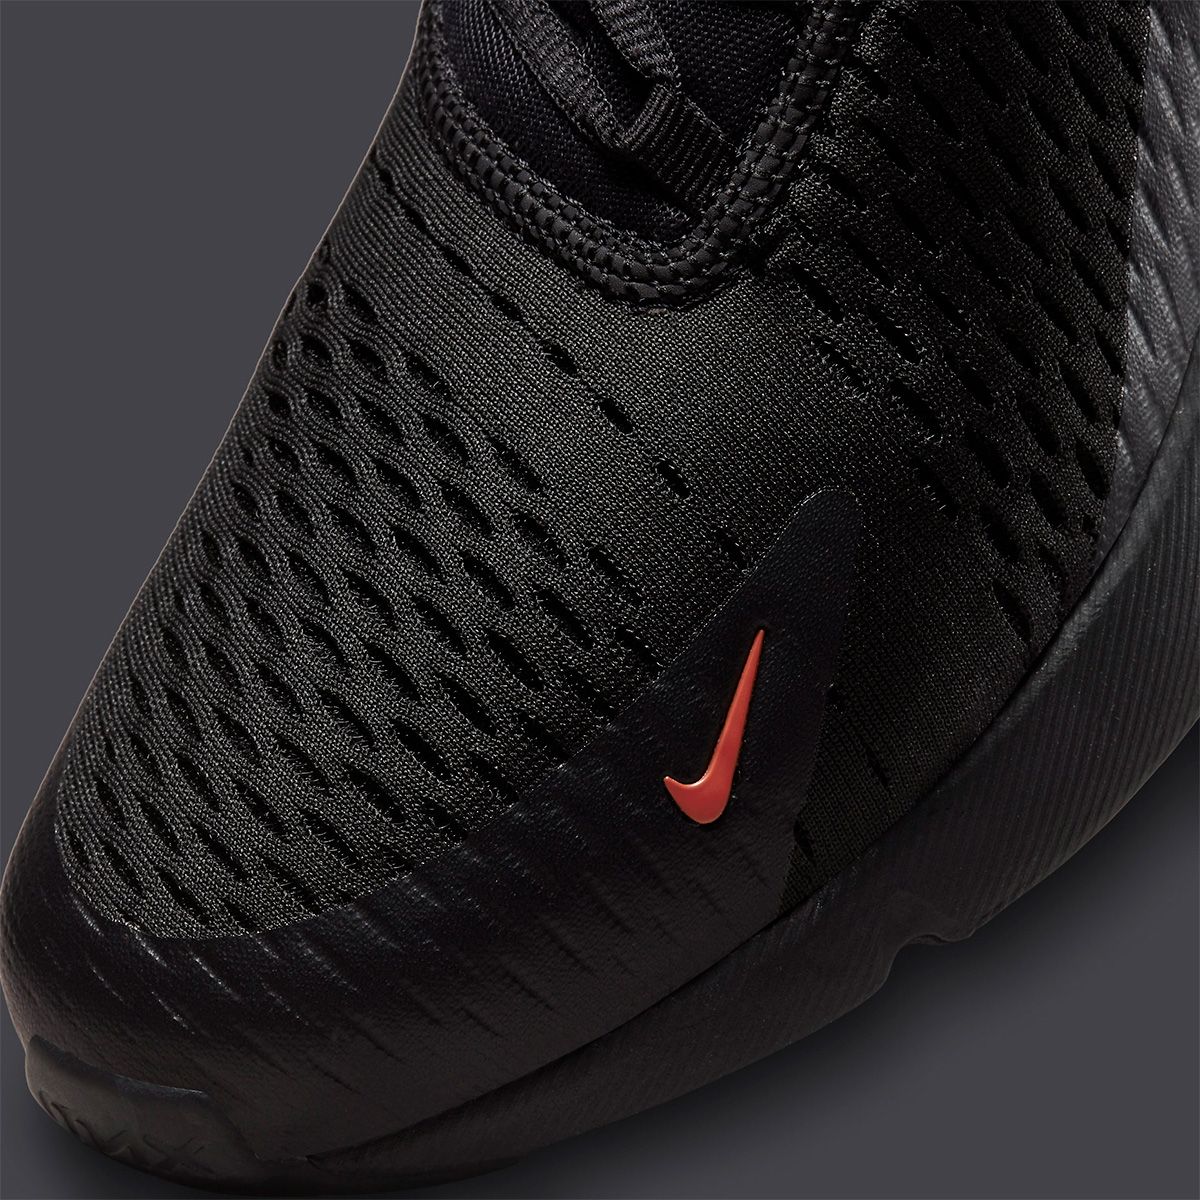 Knooppunt Spoedig Aardbei Nike Air Max 270 “Bred” is Coming Soon | House of Heat°